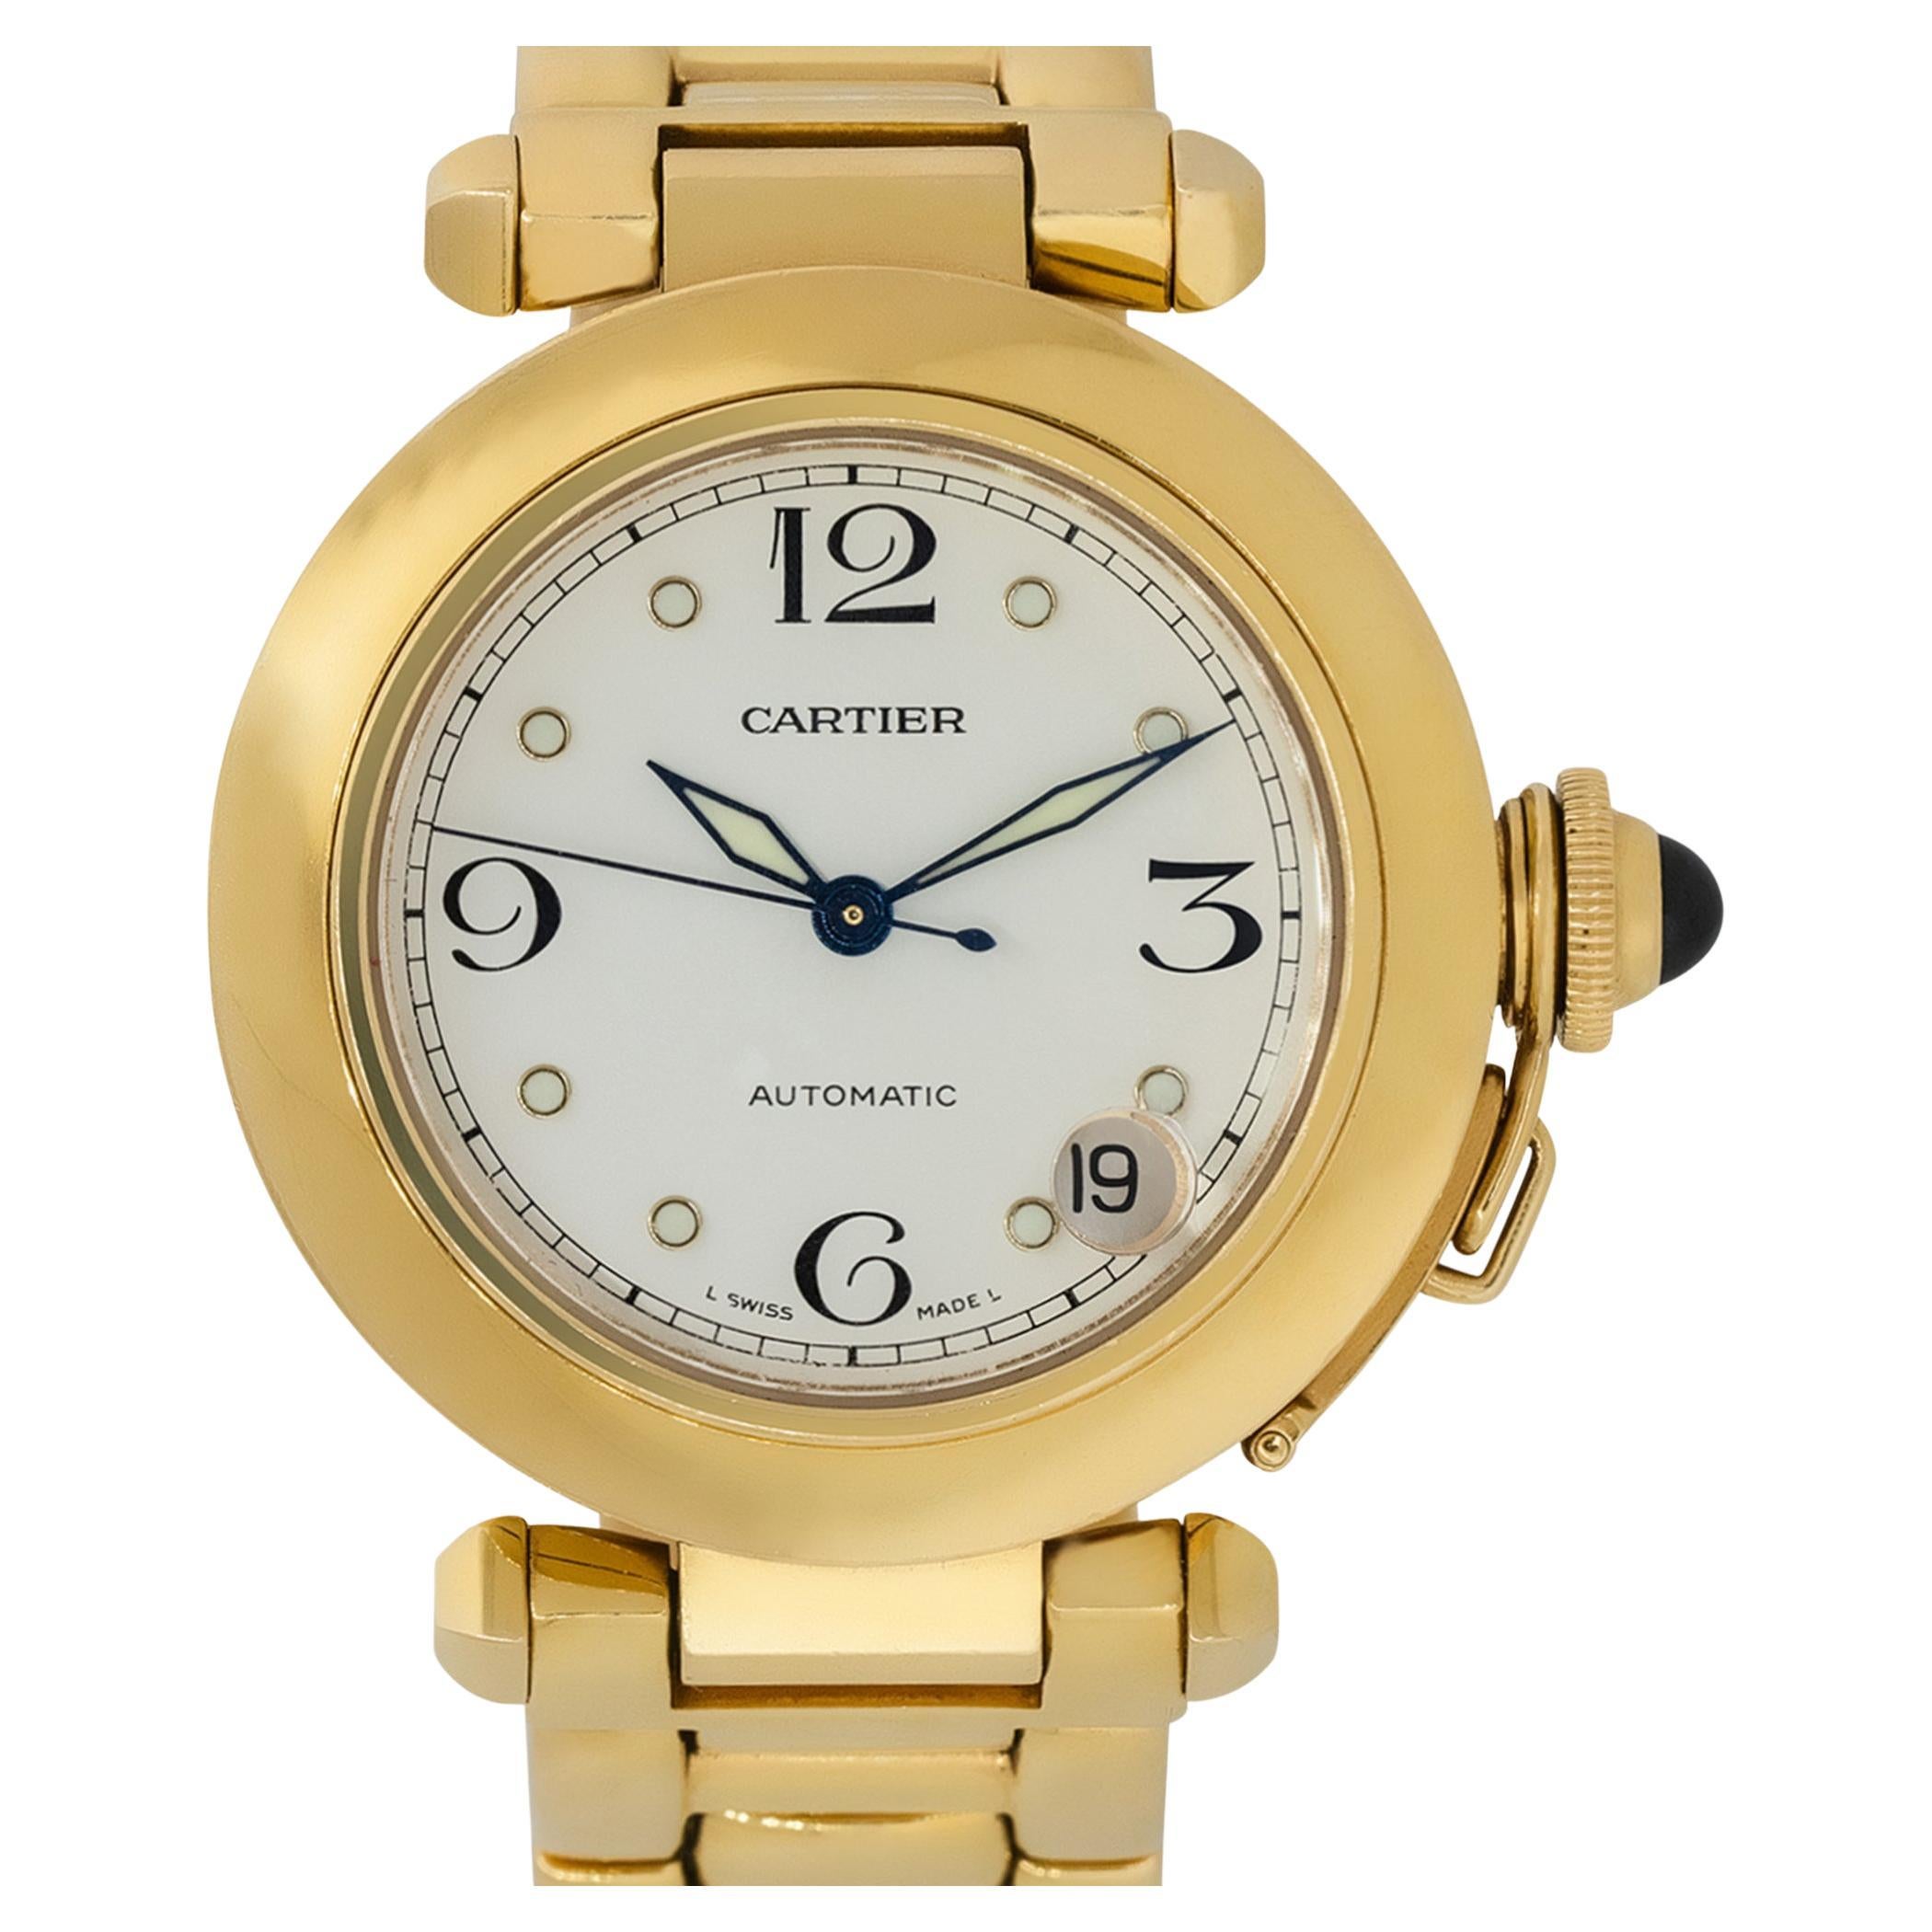 Cartier 1035 Pasha De Cartier White Dial Watch 18 Karat Watch in Stock